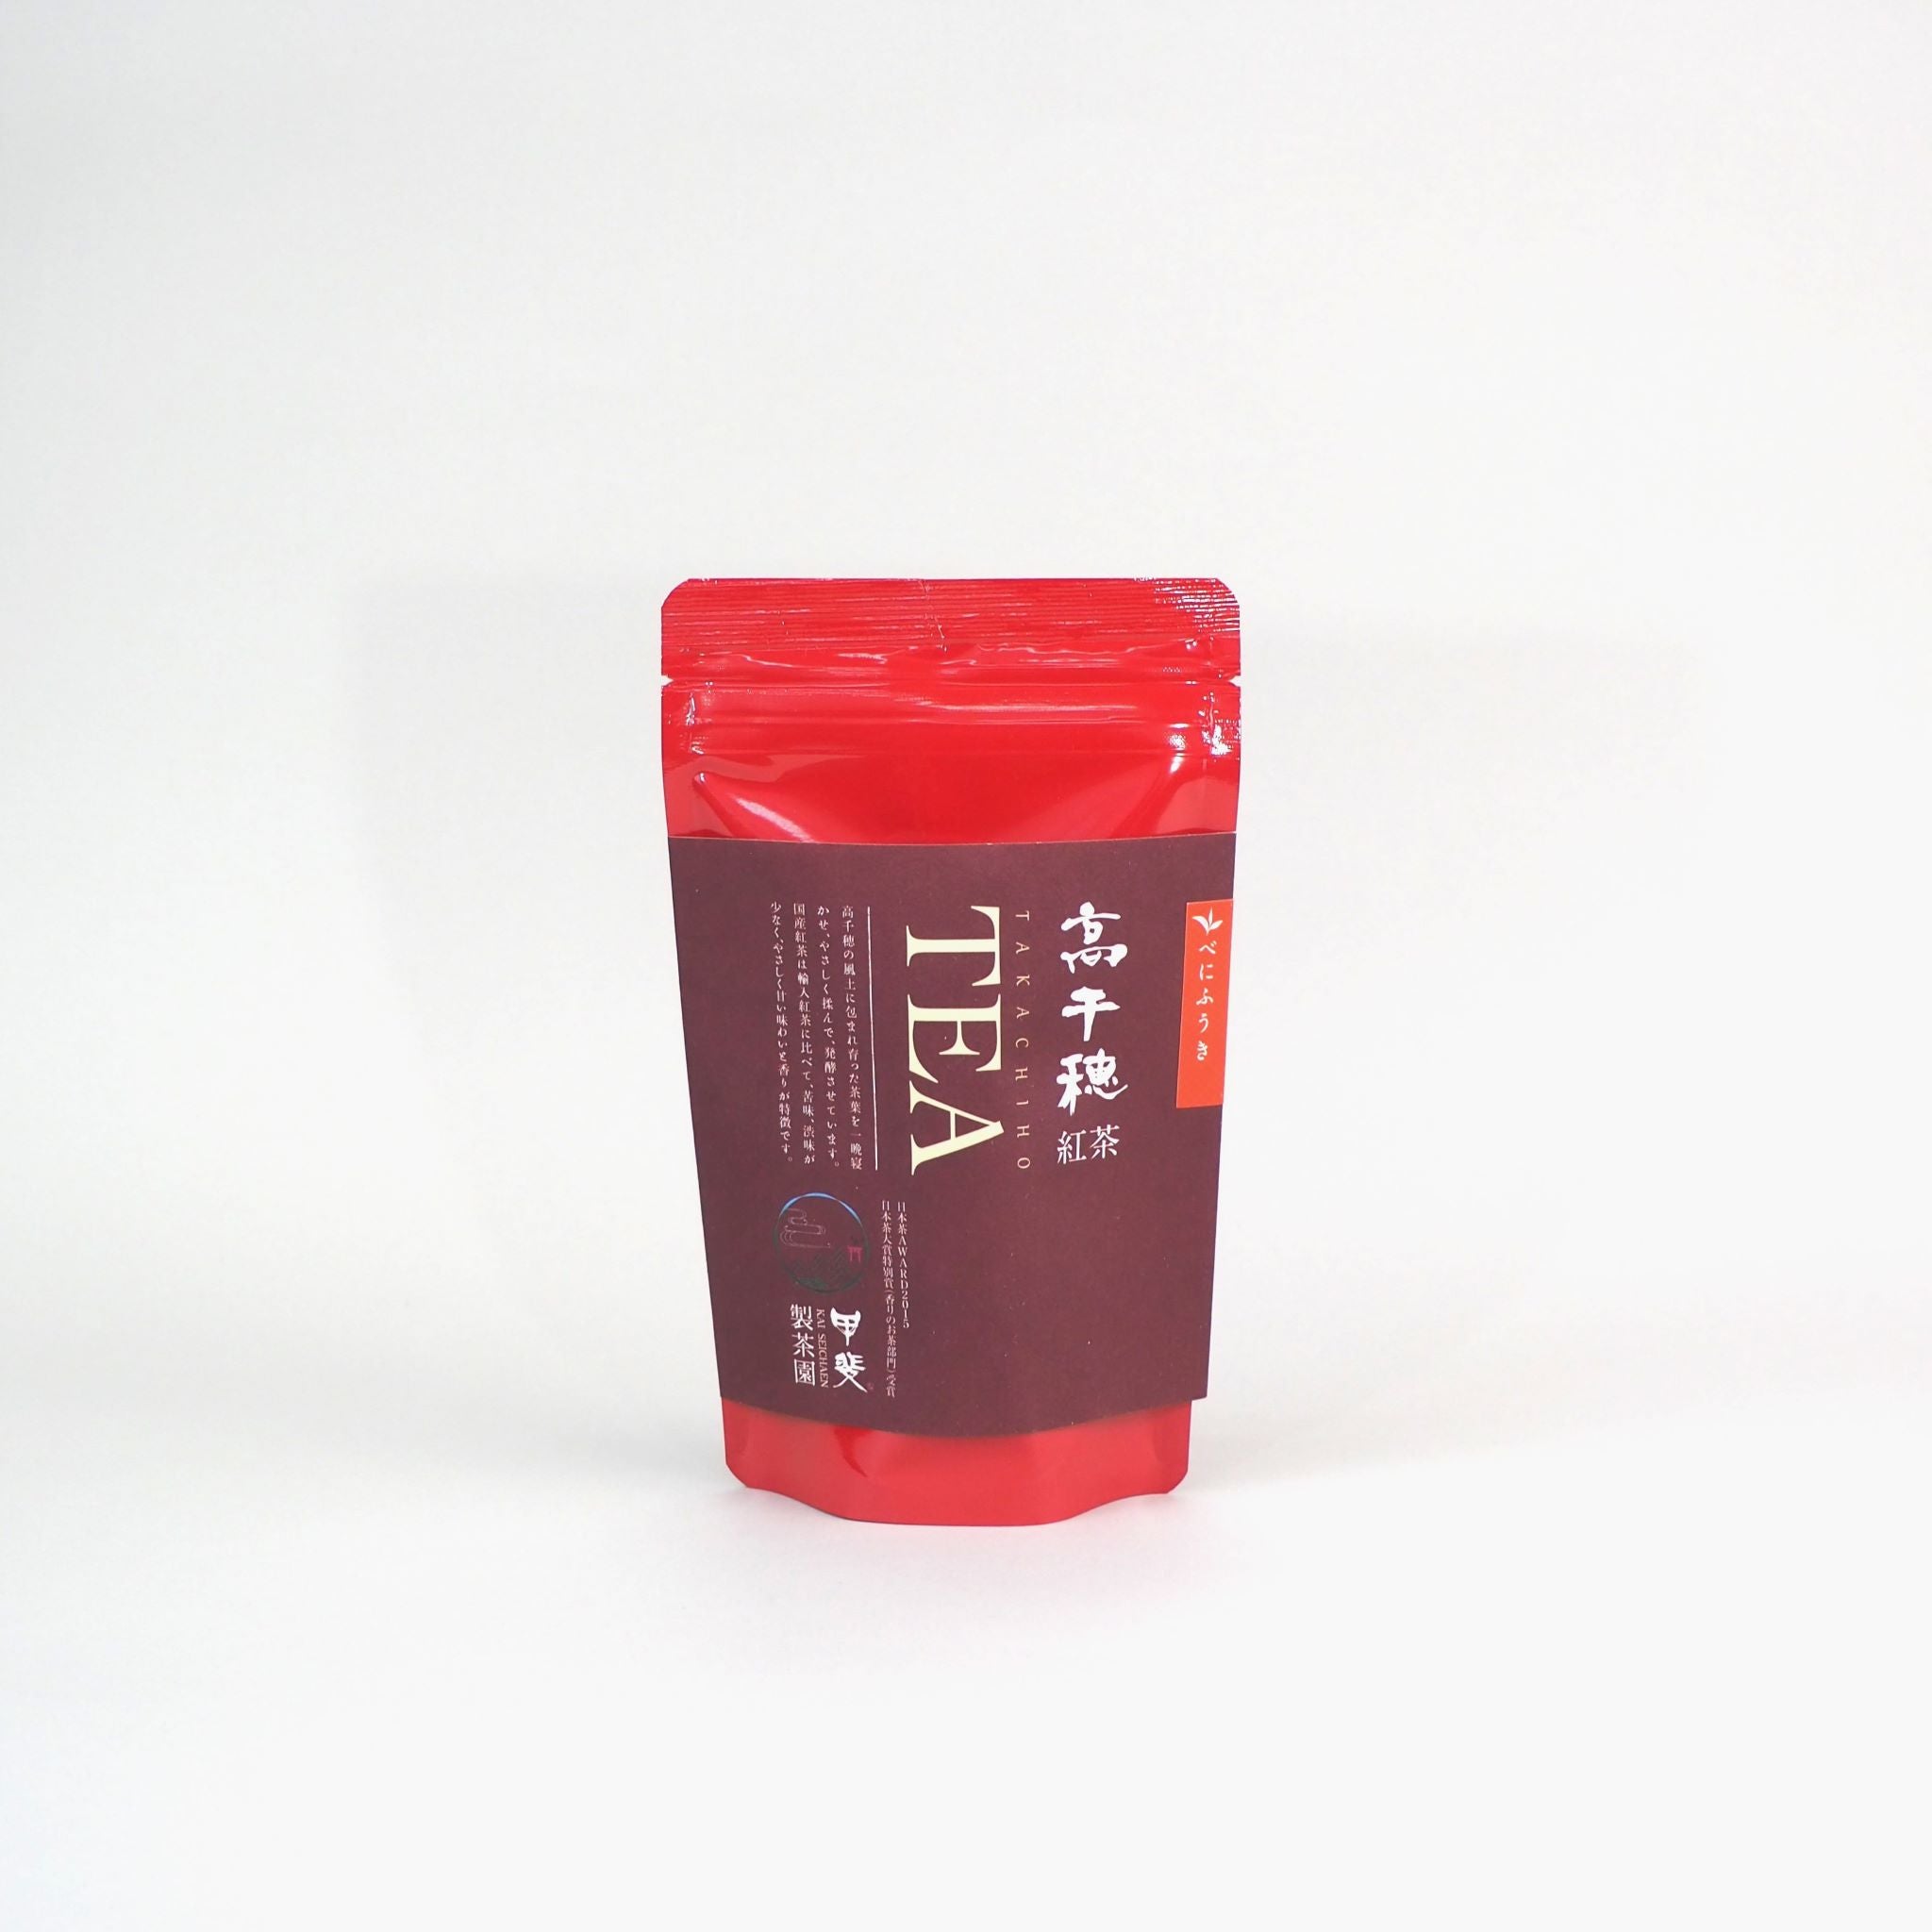 茶葉のパッケージ画像です。赤色のプラスチック袋の外装です。外装中央の紙帯に、「べにふうき　高千穂紅茶」と記載されています。